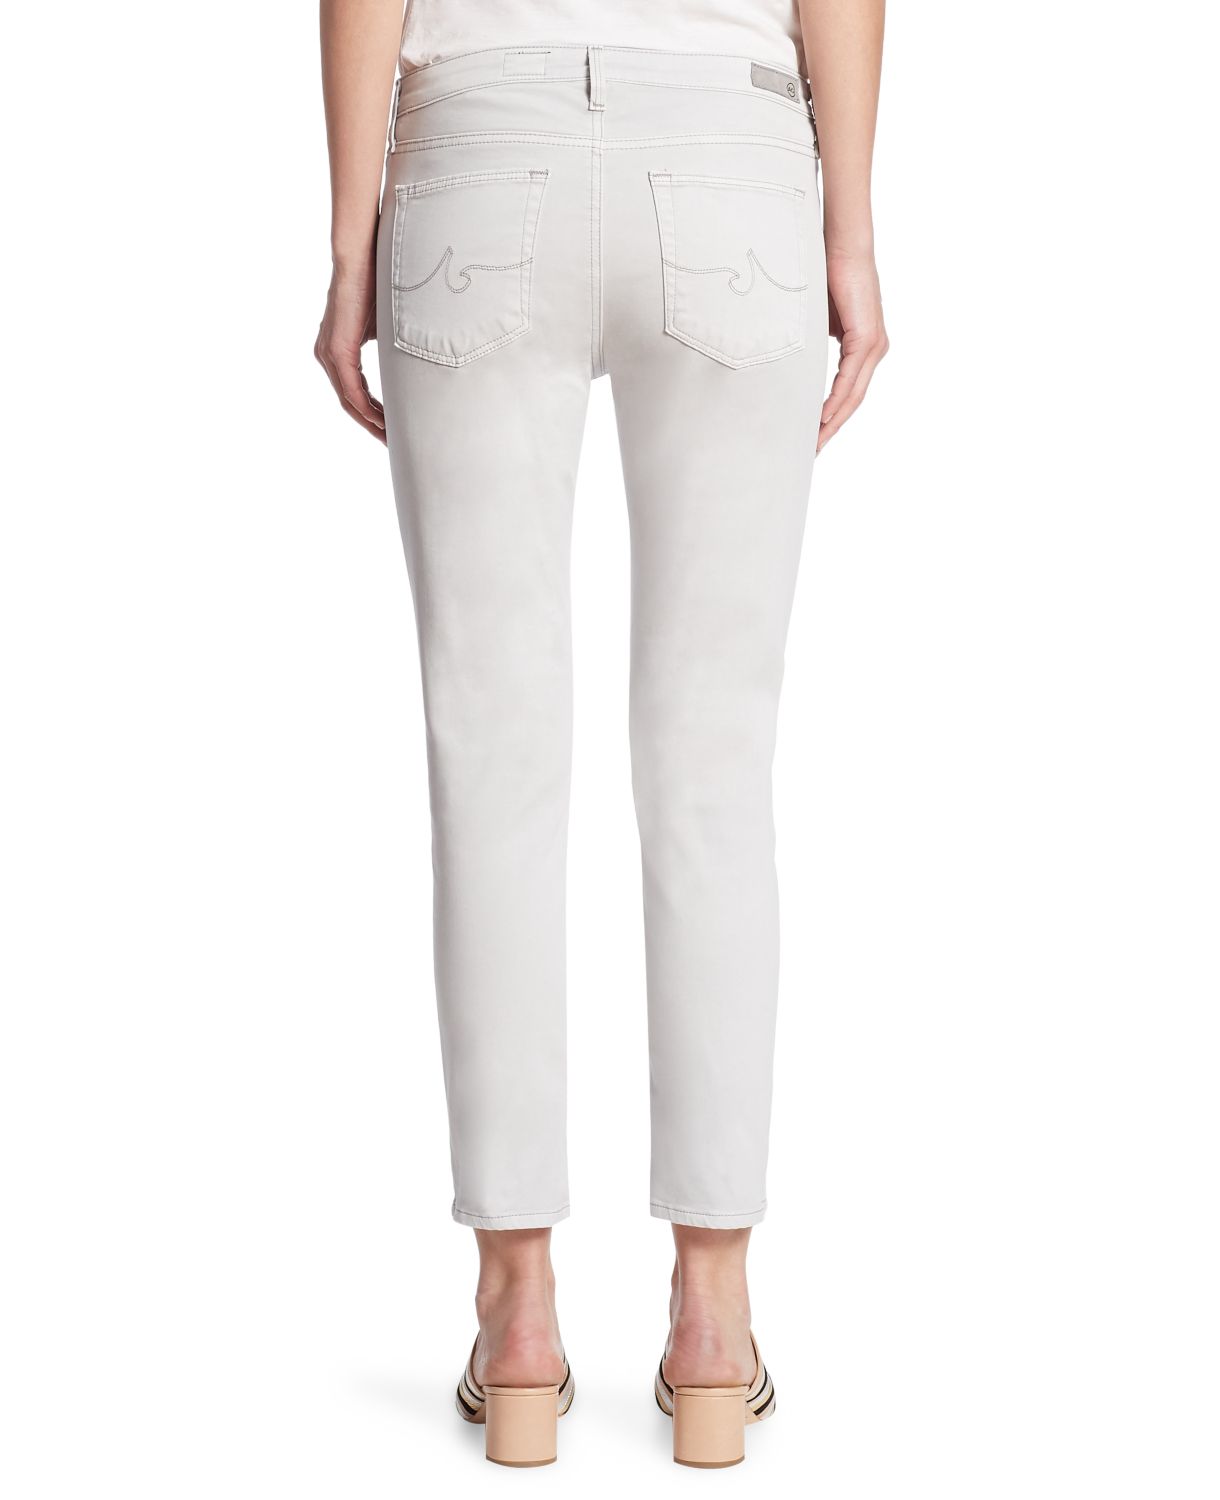 Укороченные сатиновые джинсы-сигареты Prima AG Jeans